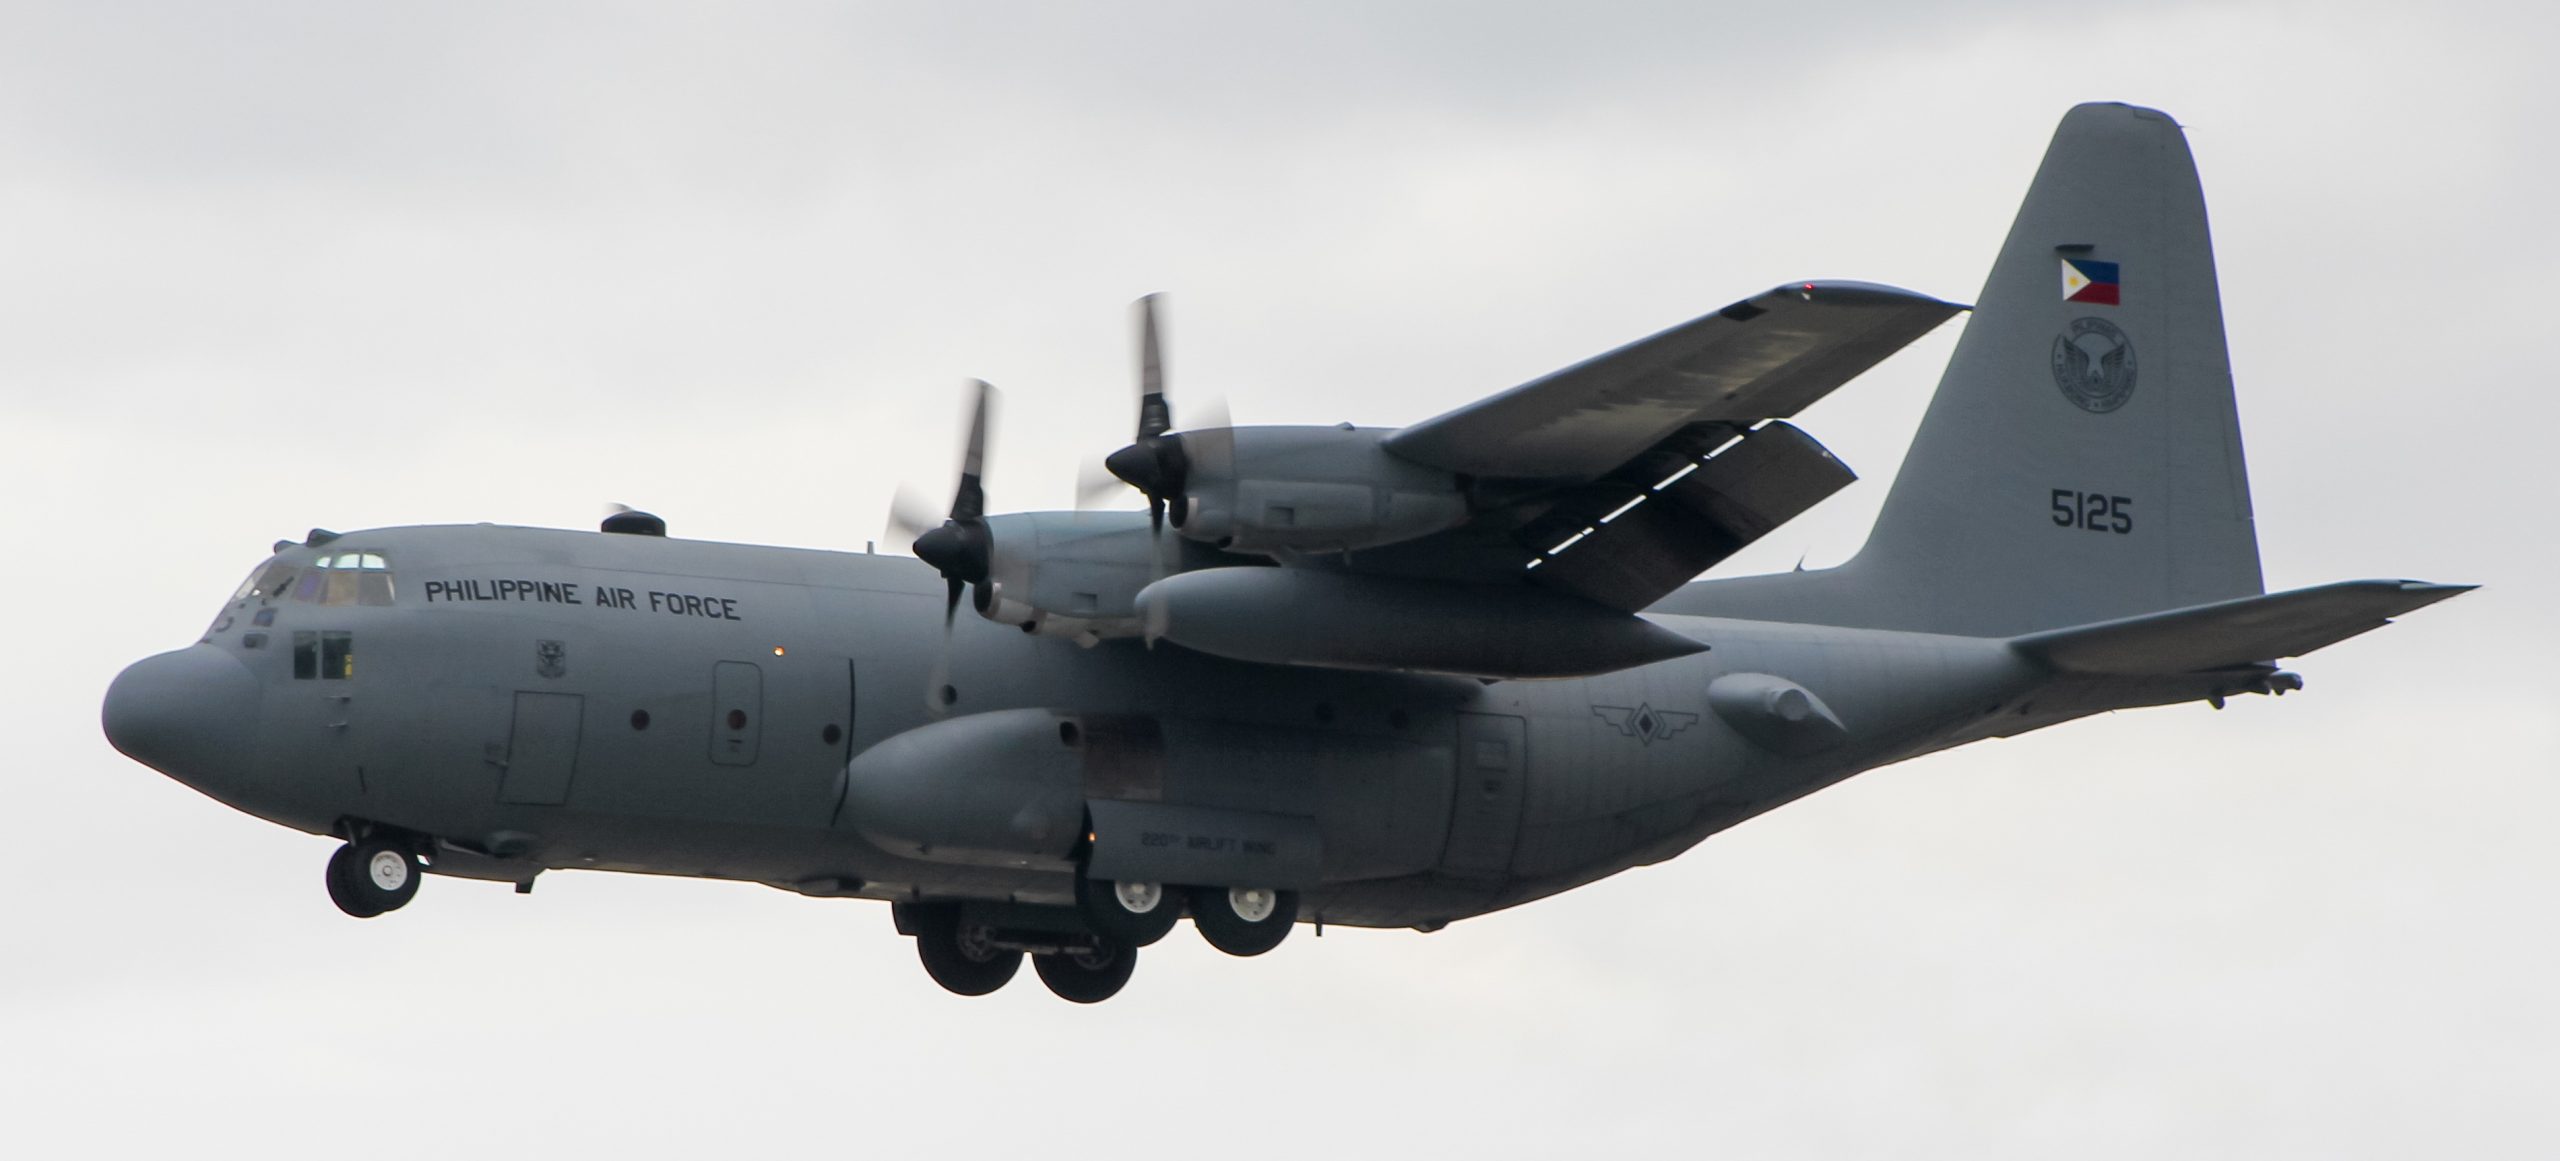 10 éves a C-130E Hercules repülőgép a lengyel fegyveres erőknél, 1. rész